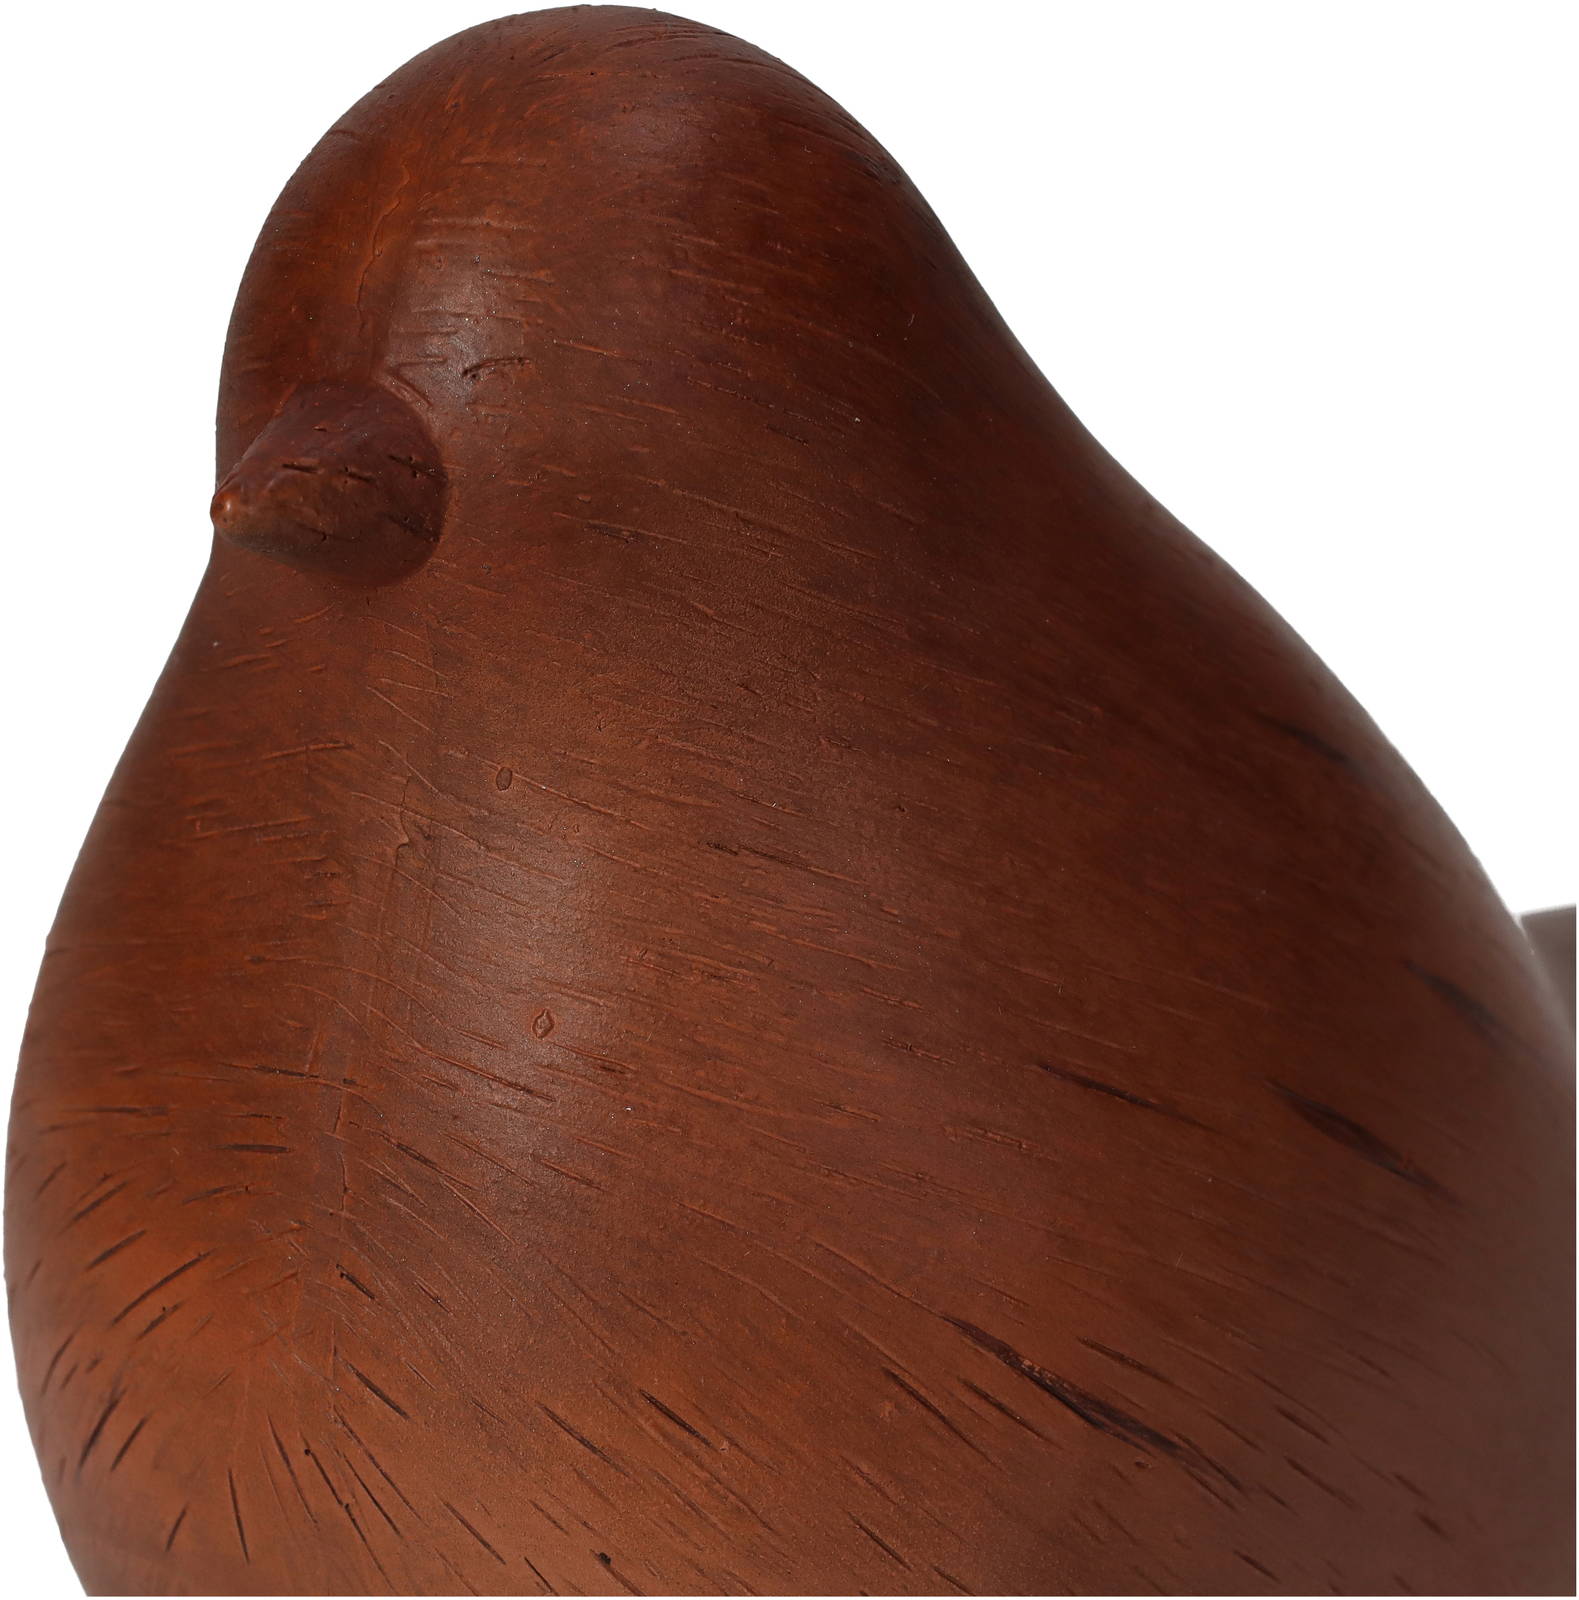 Ornament Bird Brown 11x8x15cm